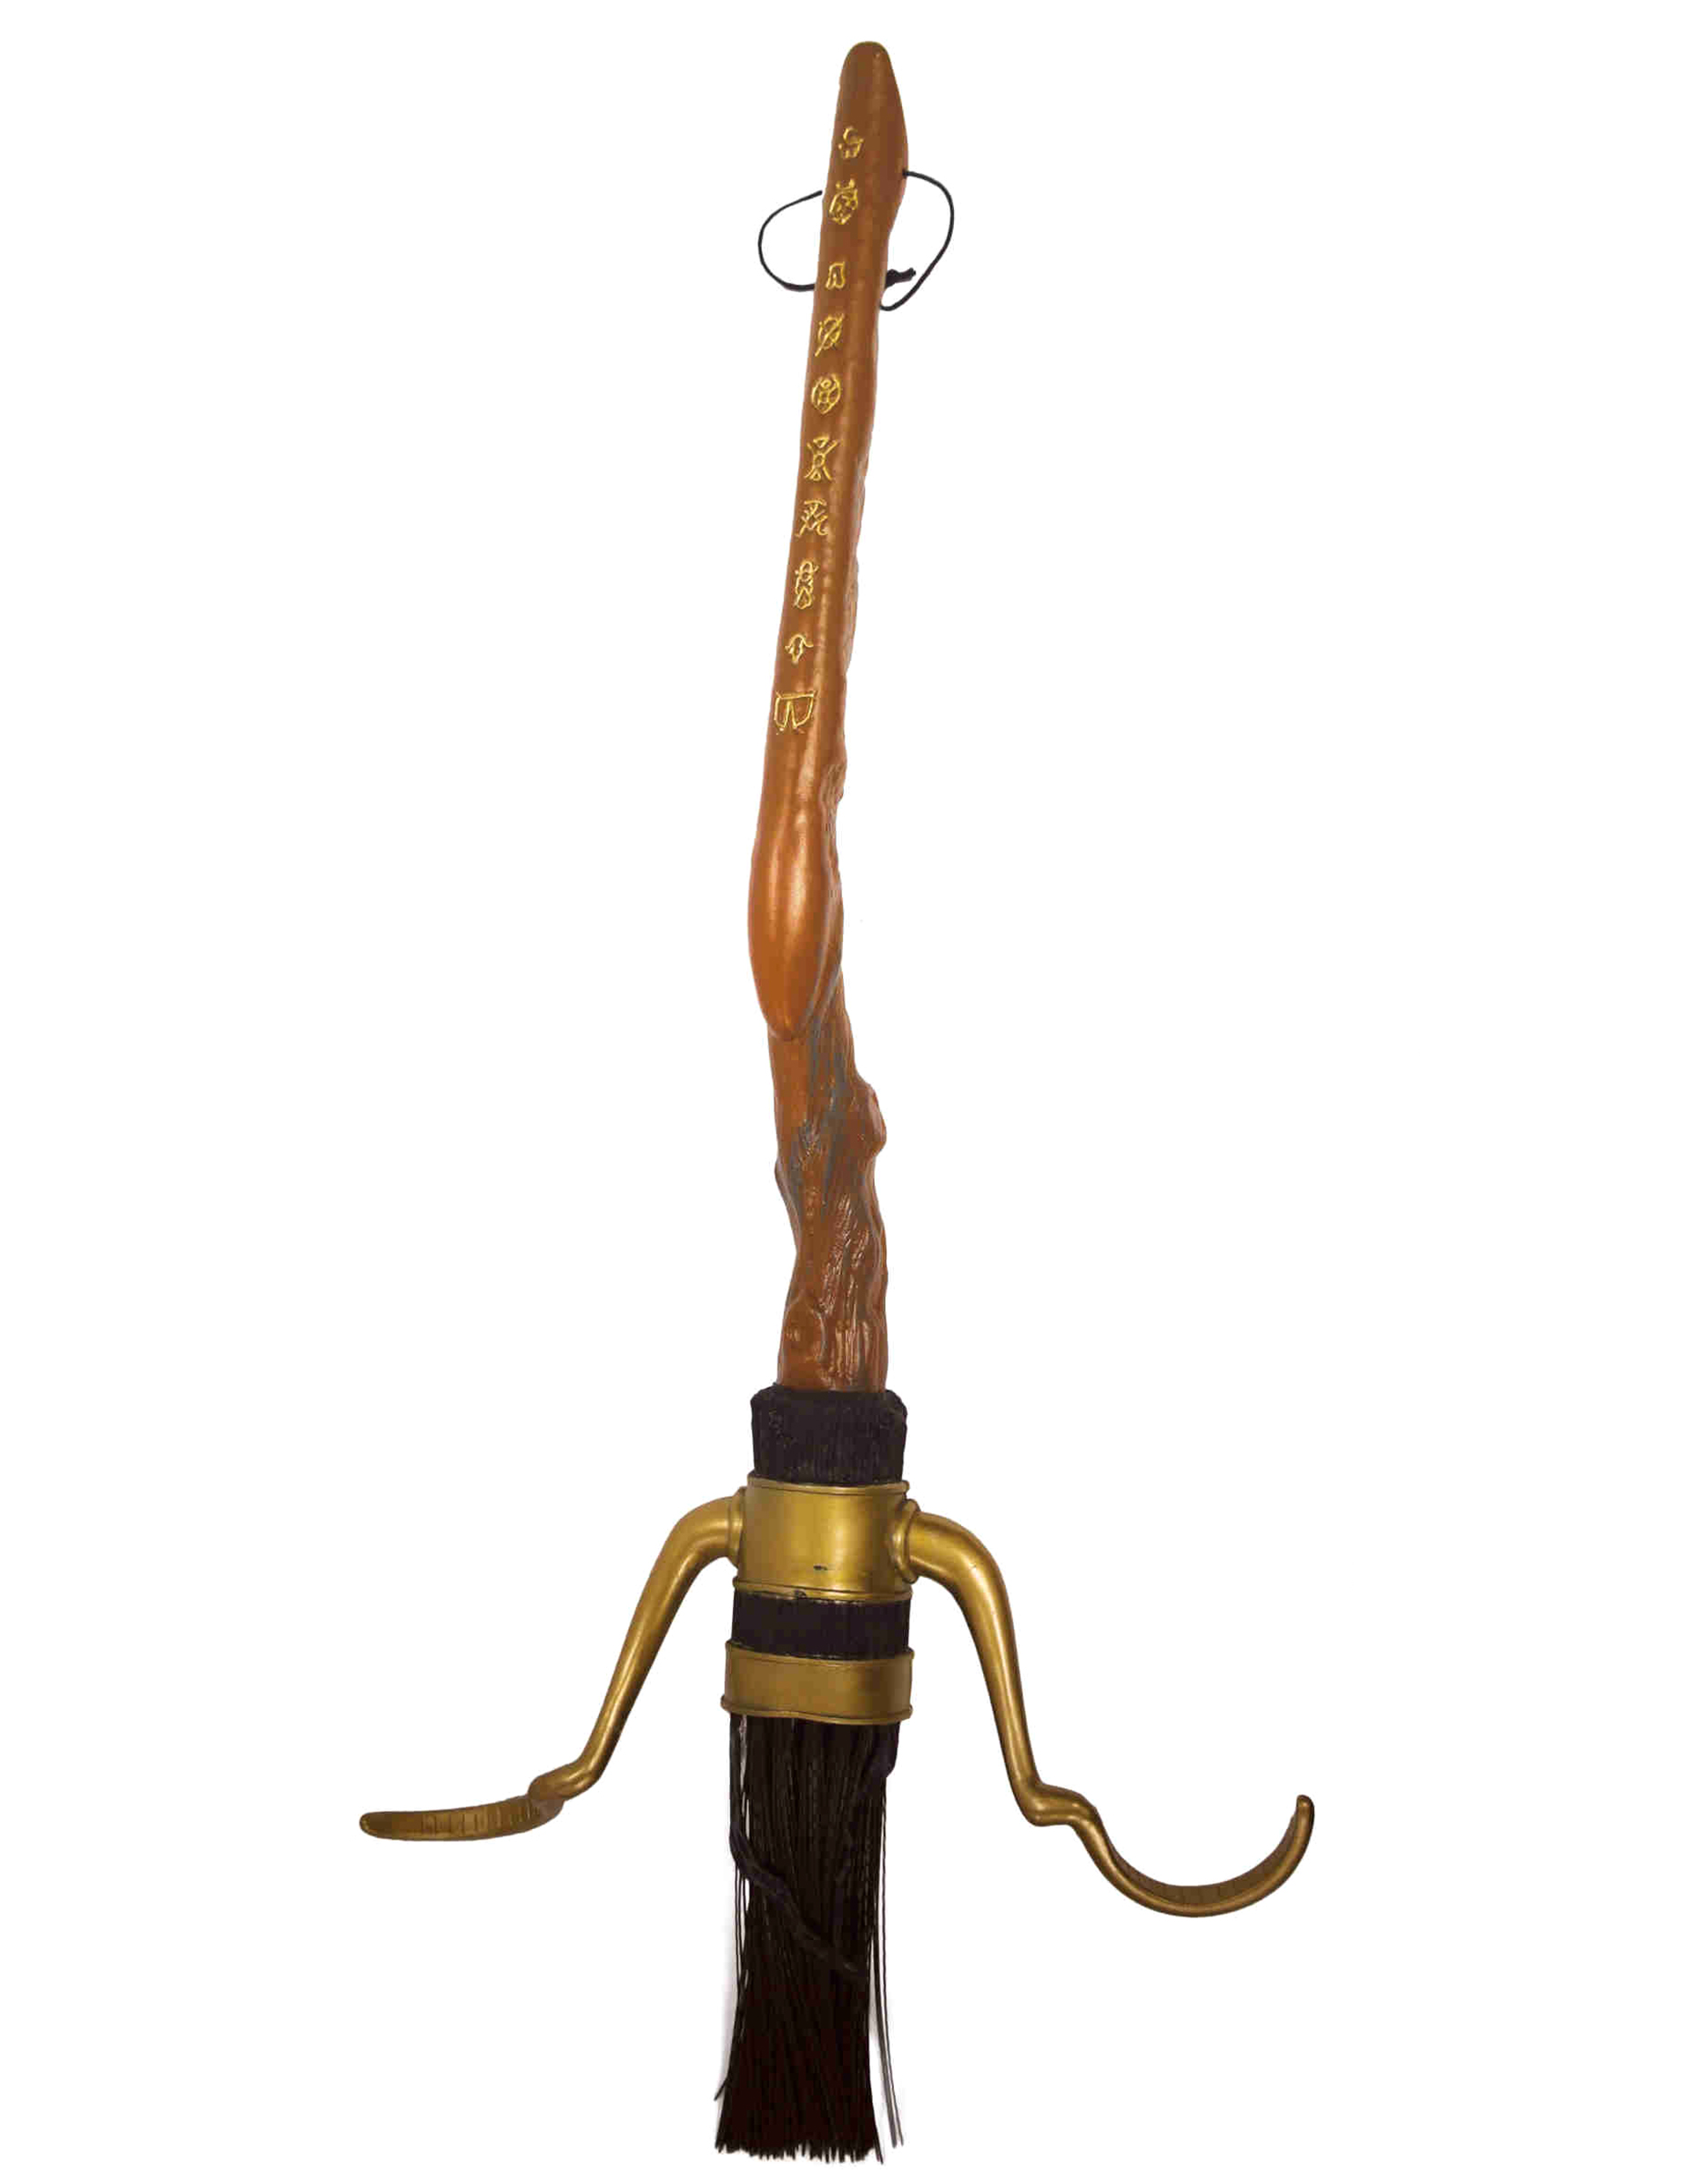 Nimbus 2000 Quidditch-Besen Harry Potter braun-gold-schwarz 90 cm von RUBIES FRANCE